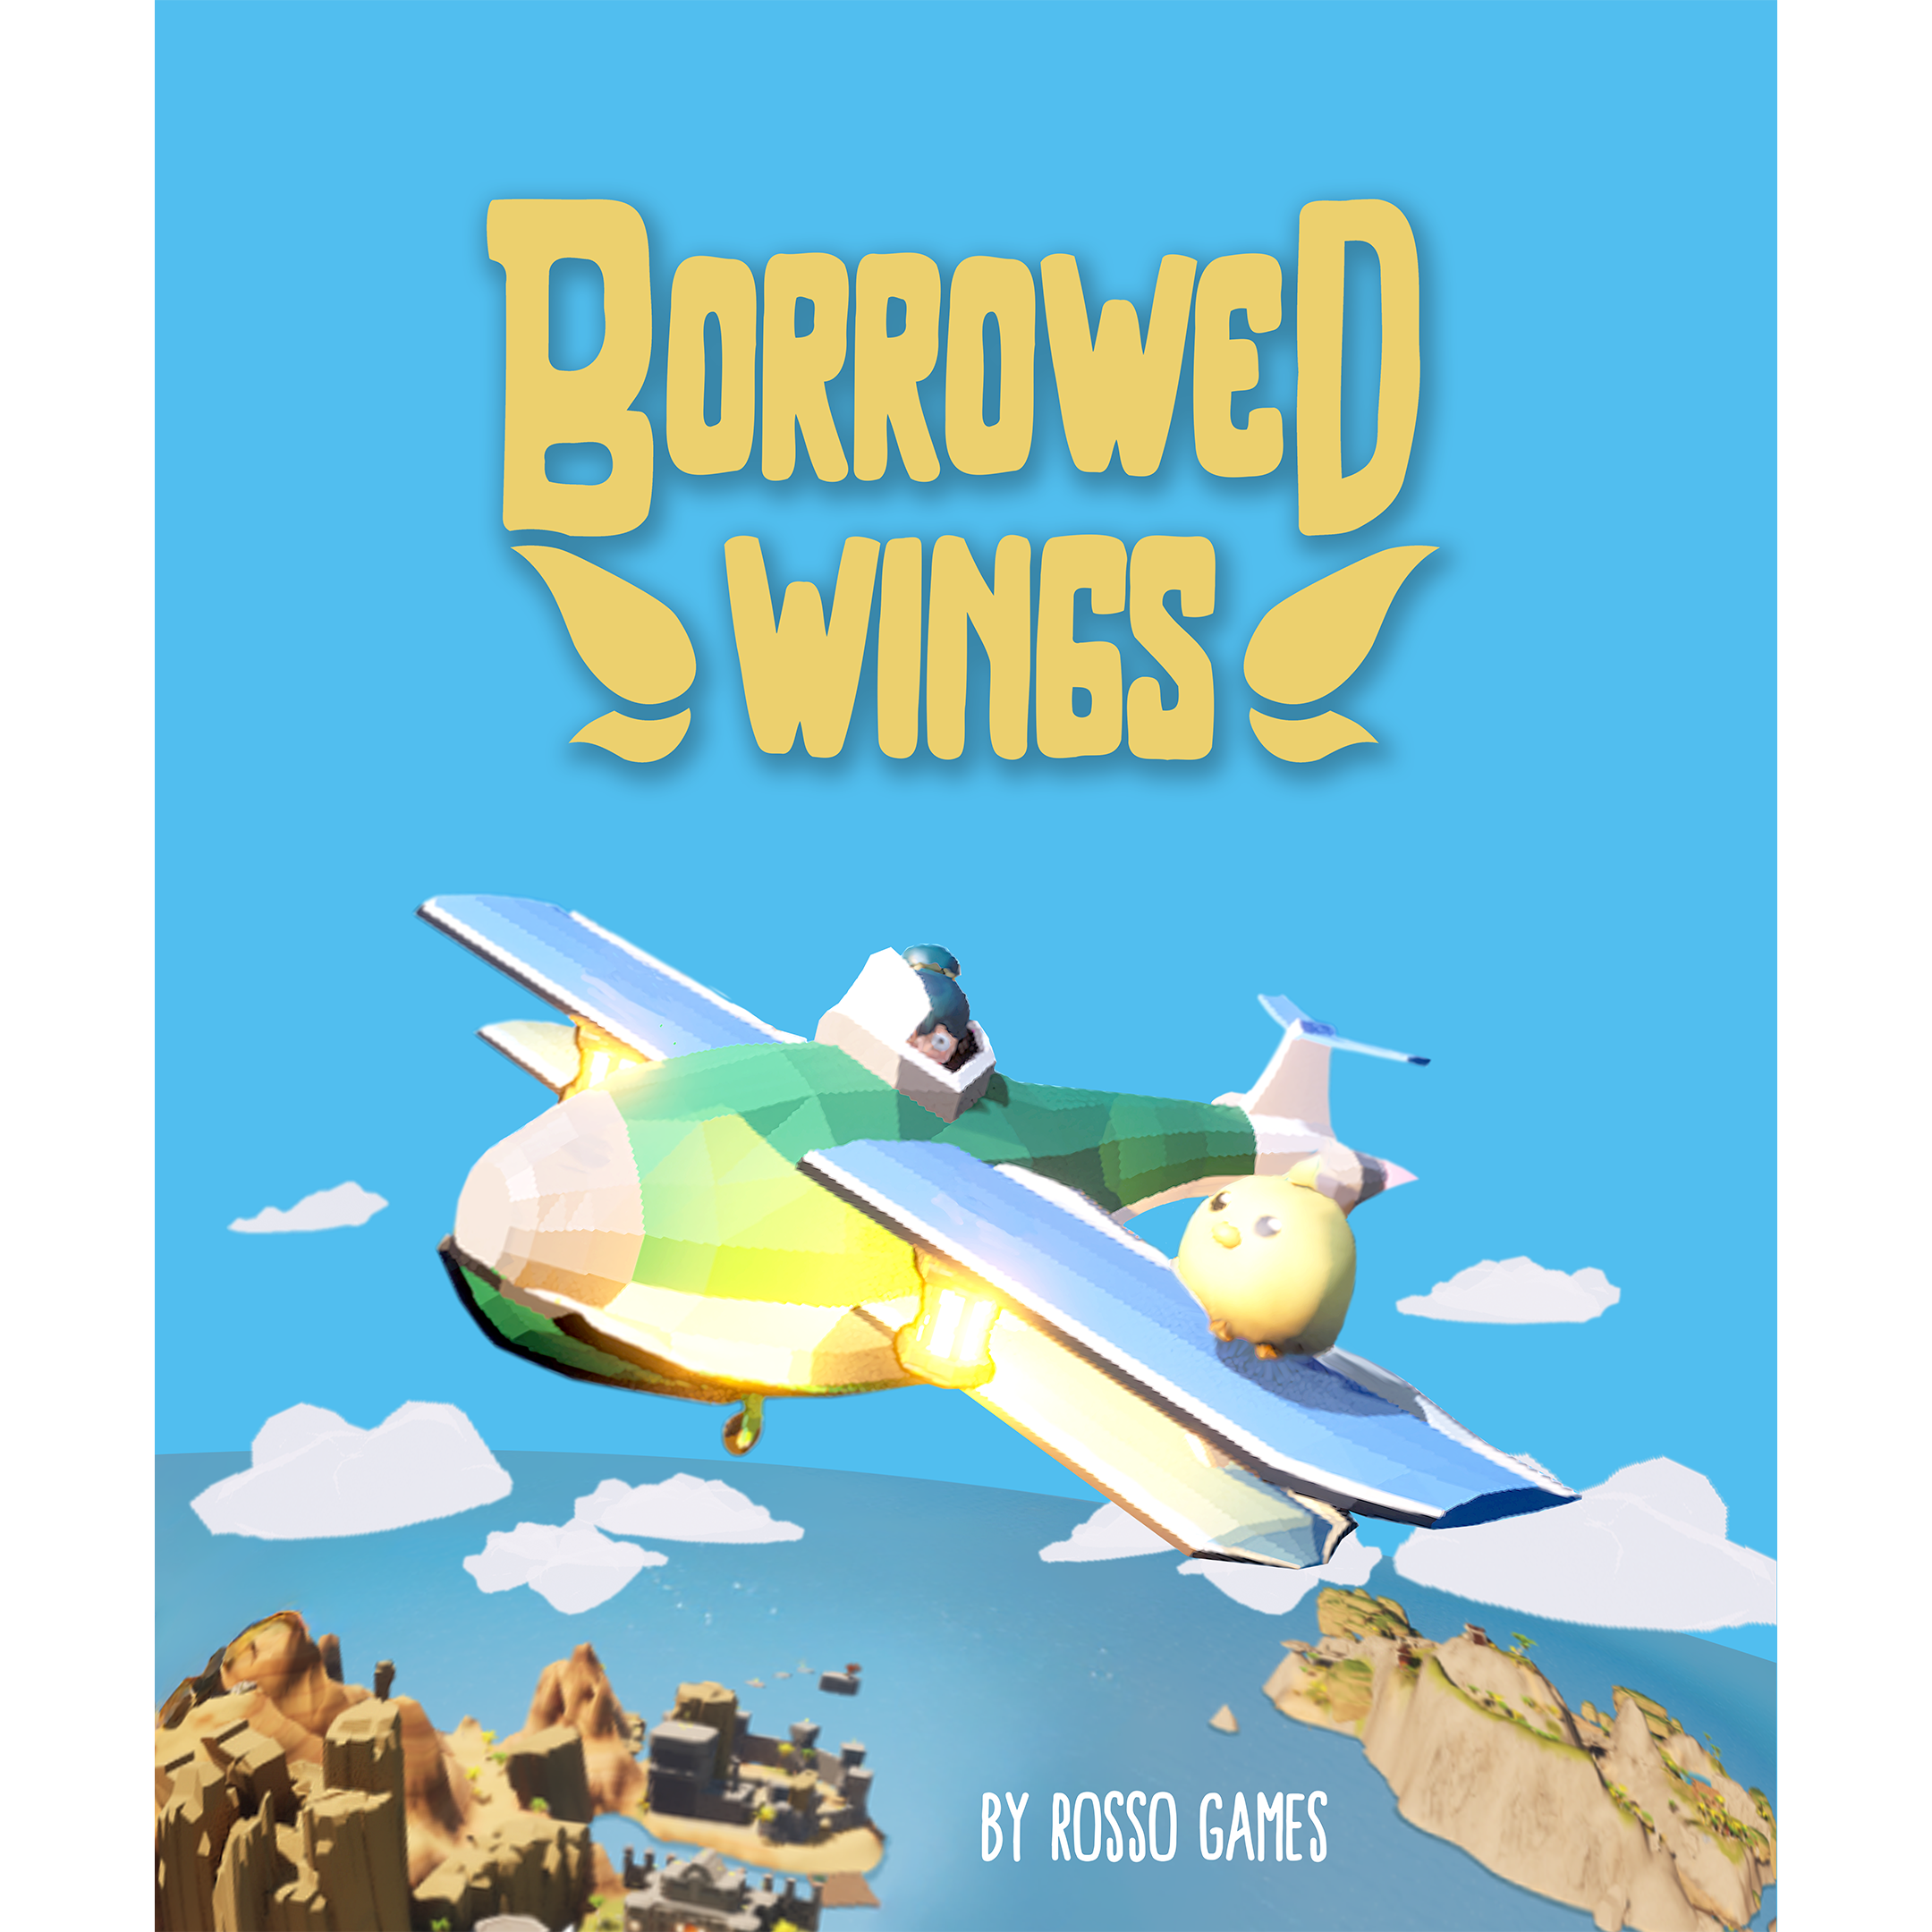 Borrowed Wings